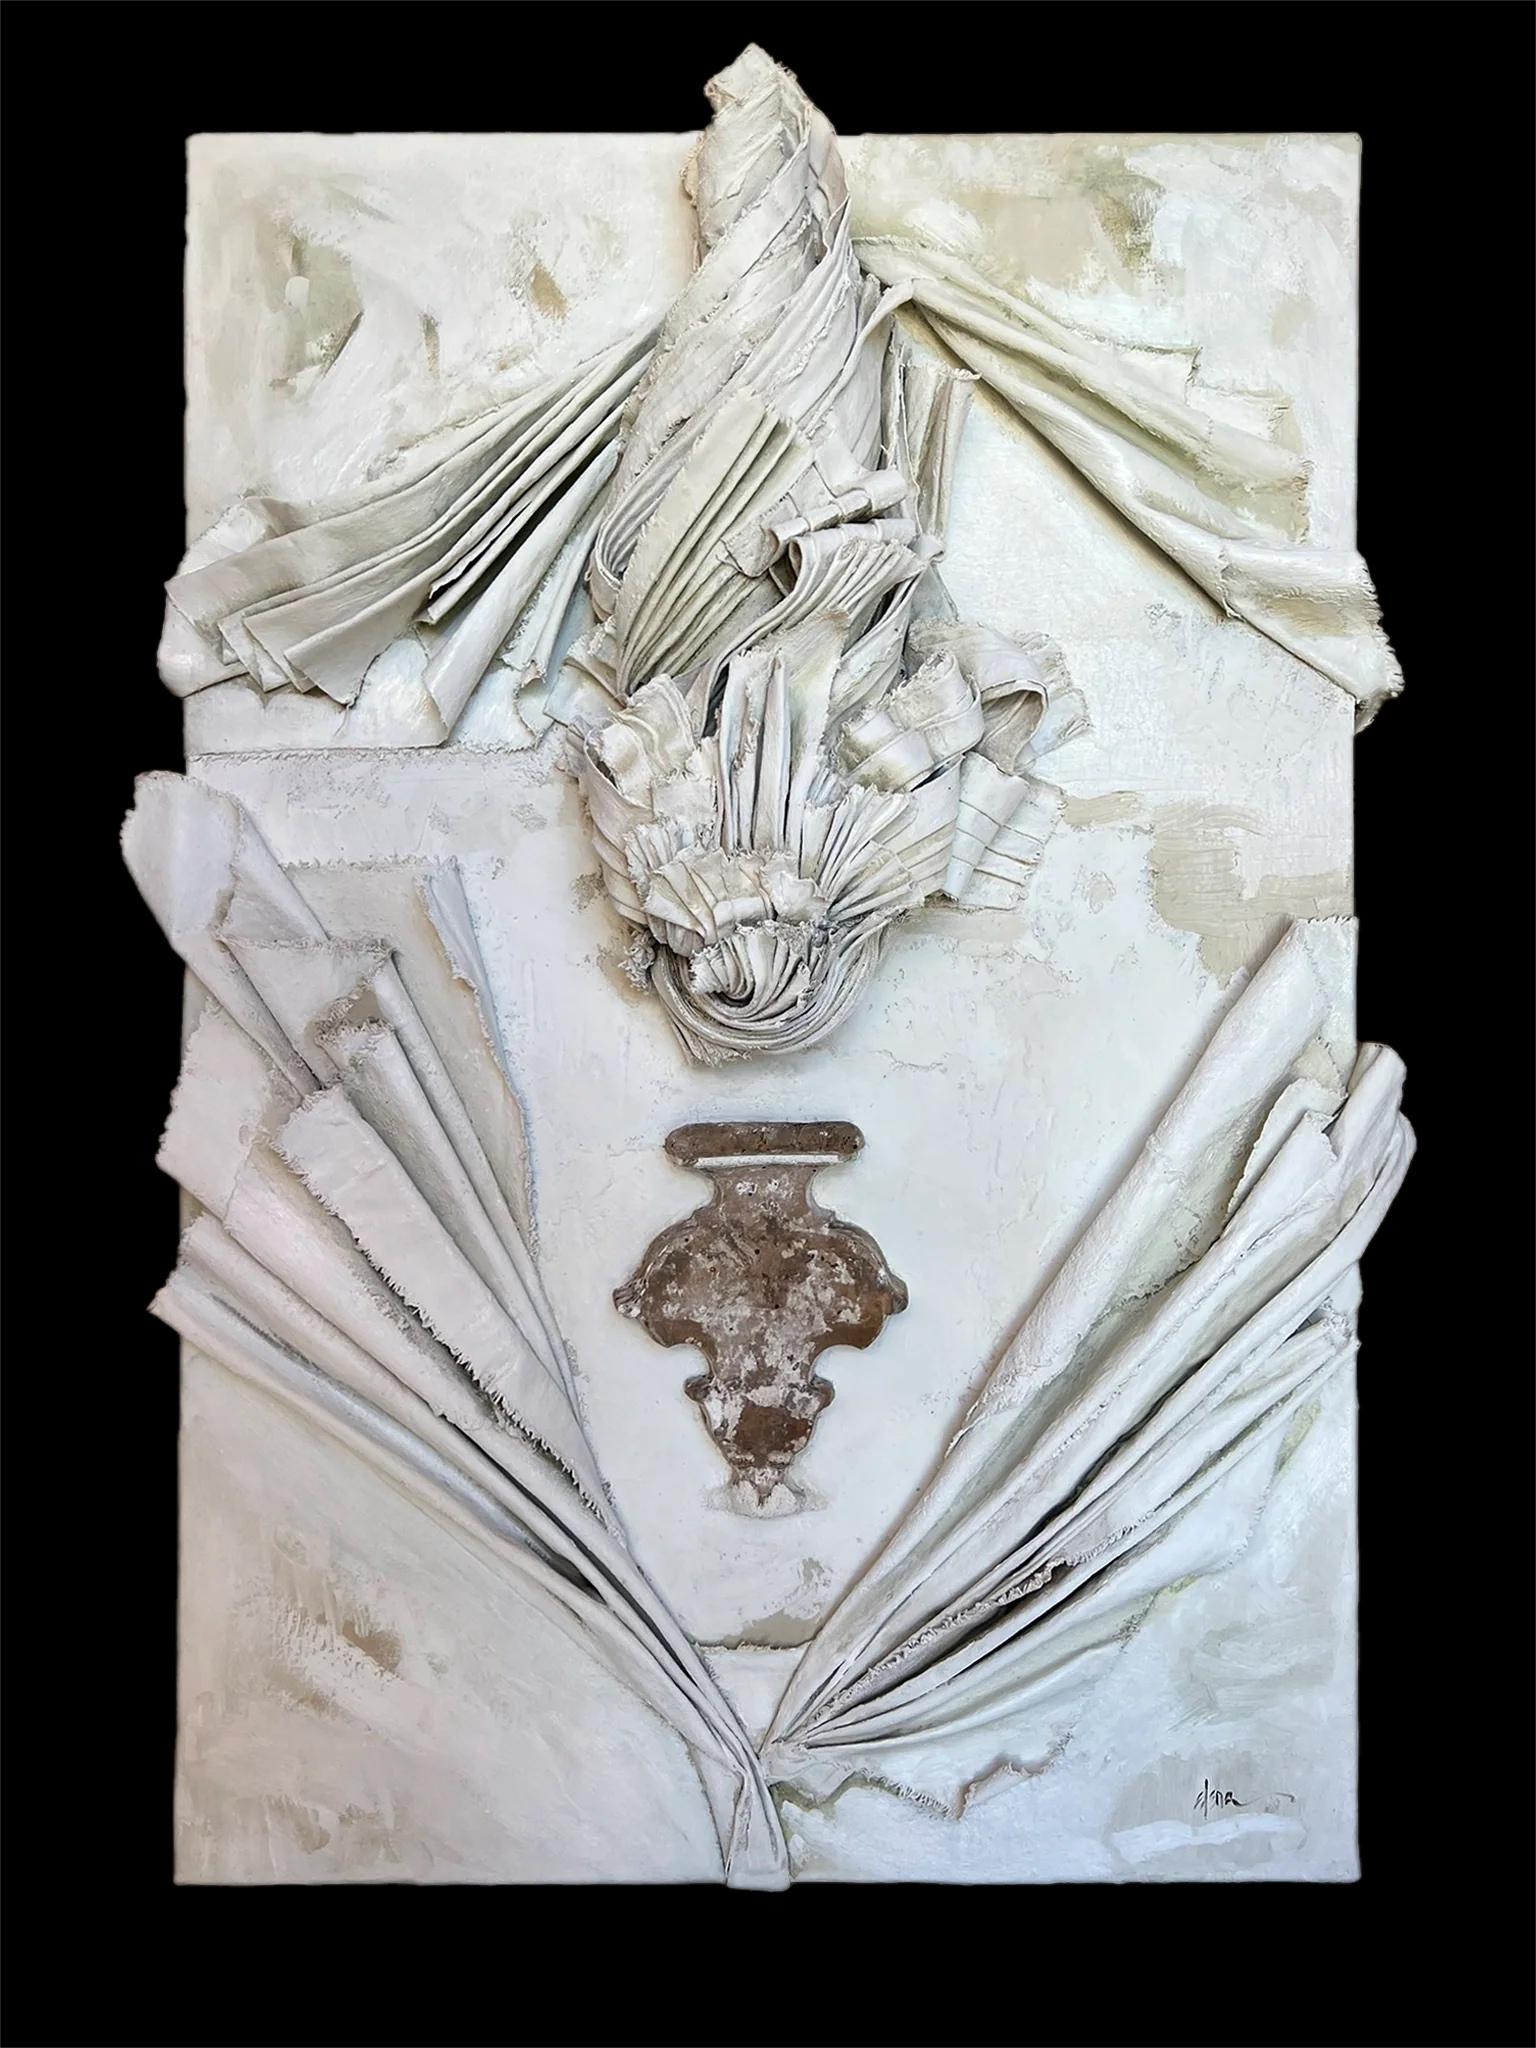 Bildhauerisches Leinwandrelief mit einem Fragment aus dem italienischen Florenz des 17. Jahrhunderts von Elena ROUSSEAU.

Die geformte Leinwand wird zusammen mit dem MATERIAL, den Ölen und der Asche auf dem Karton geformt. Das Originalfragment aus